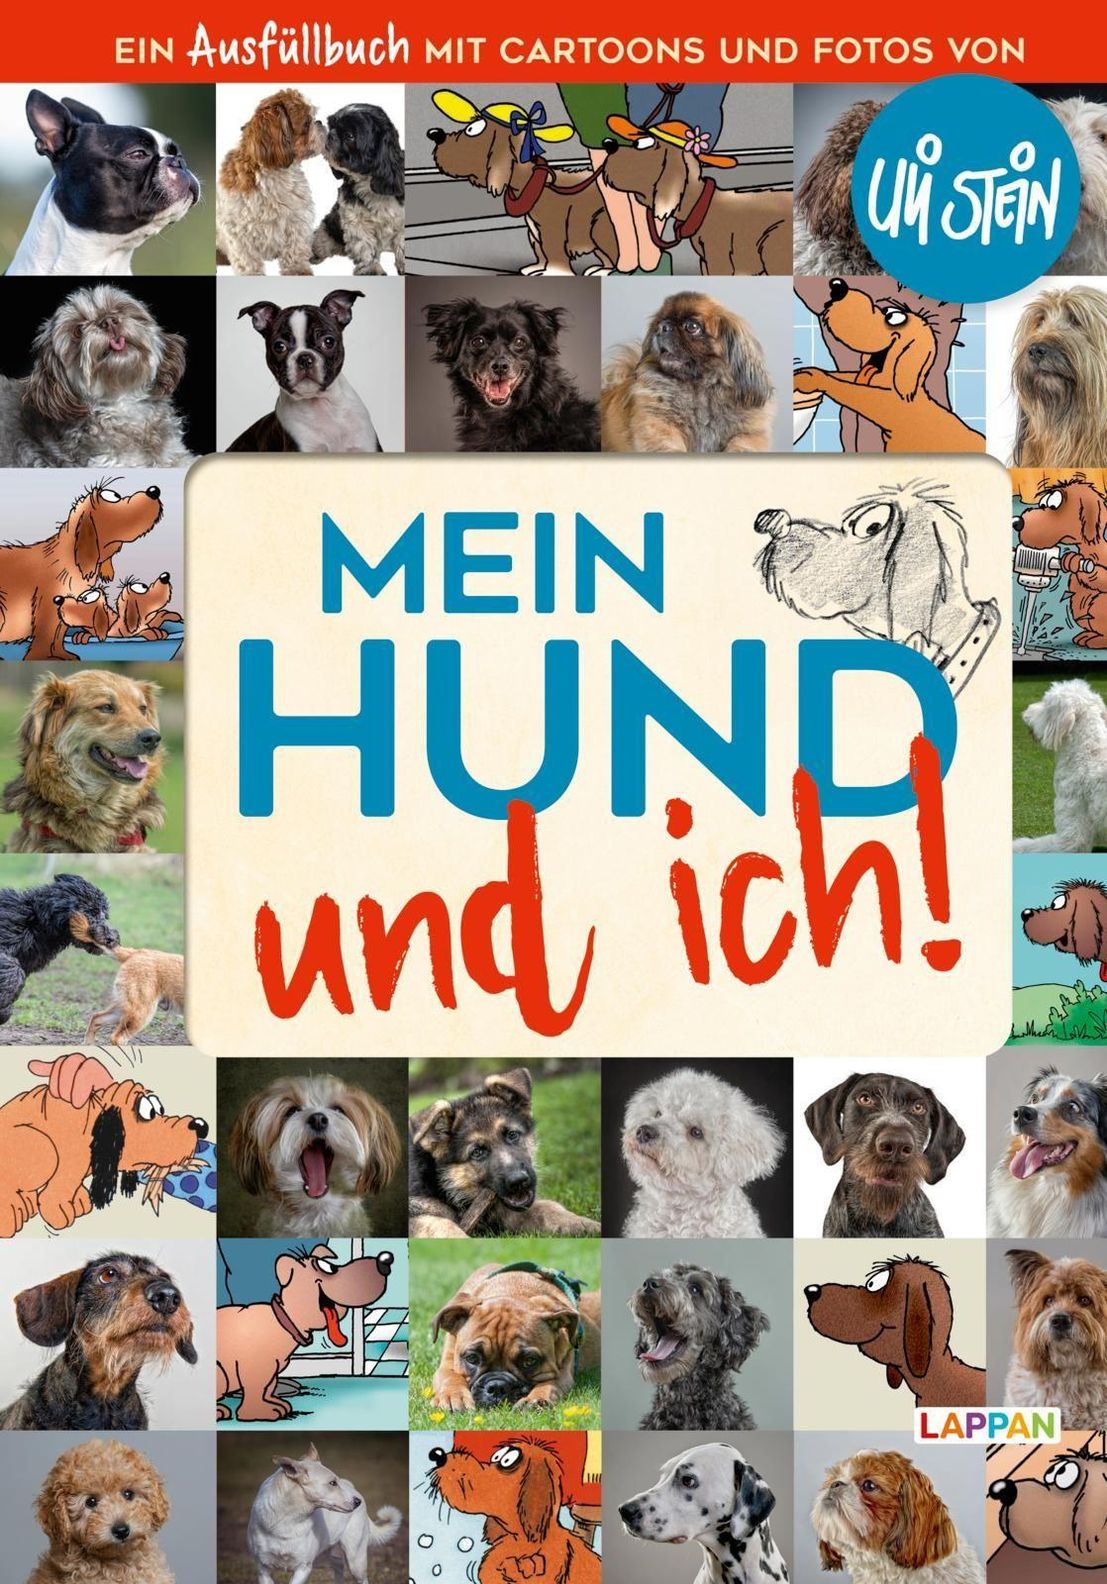 Mein Hund und ich! Buch von Uli Stein versandkostenfrei bei Weltbild.de